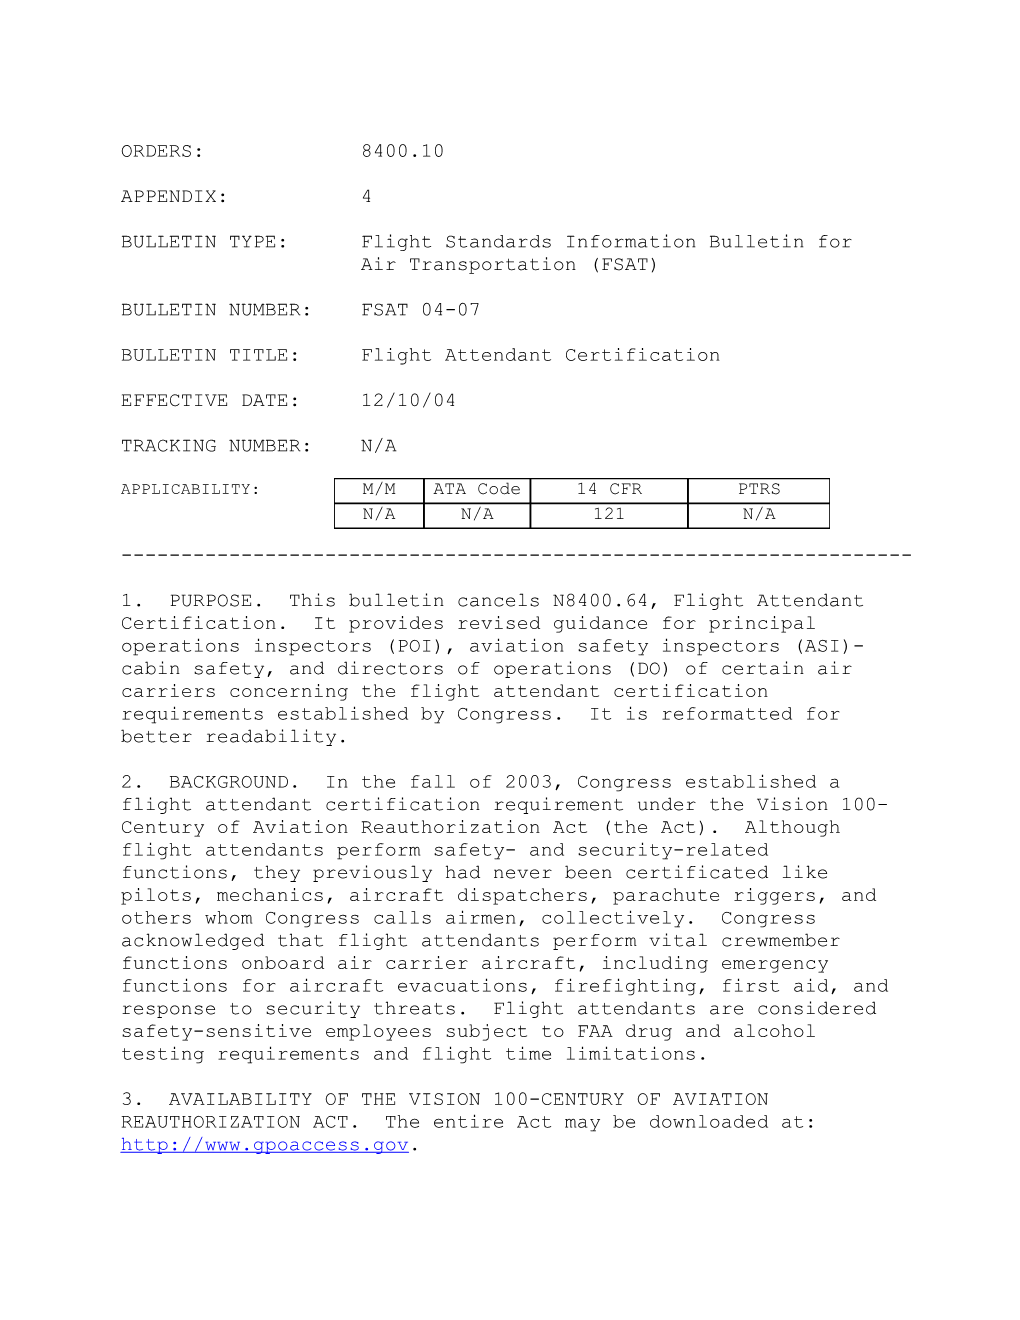 BULLETIN TYPE:Flight Standards Information Bulletin for Air Transportation (FSAT)